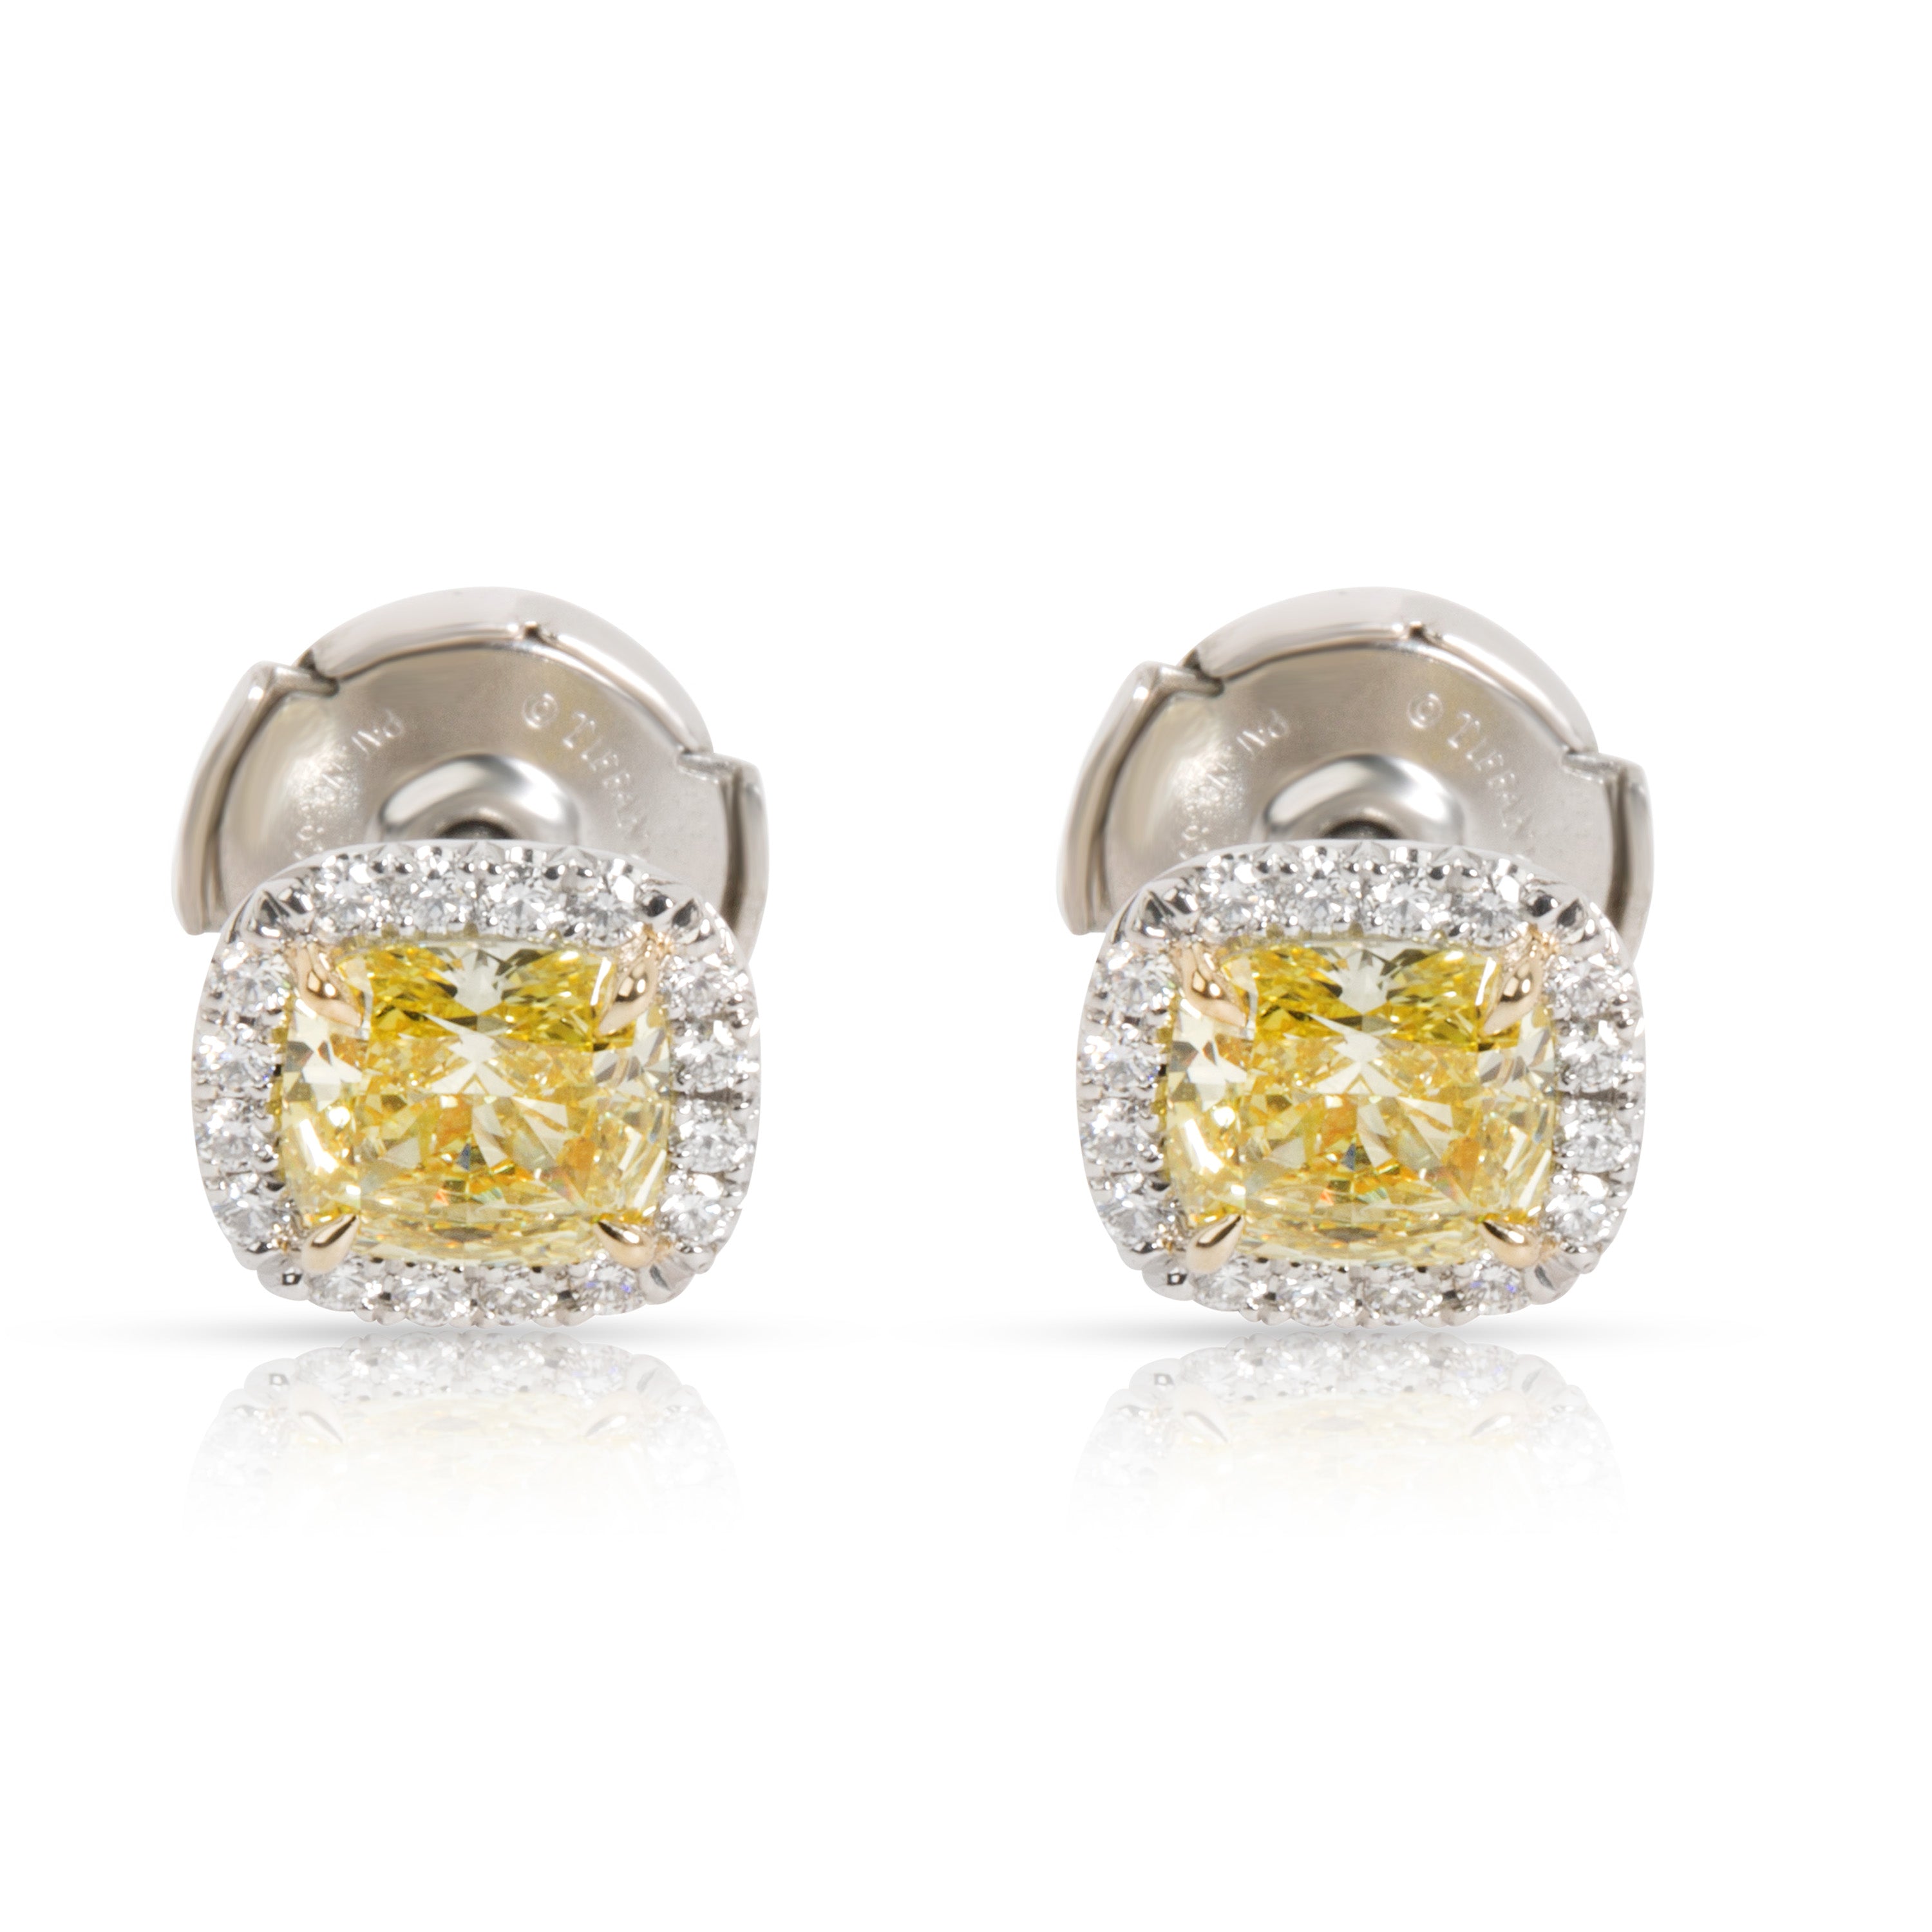 Tiffany & Co. Soleste Fancy Yellow Diamond Halo Earrings 18K White Gold  1.16 CTW – myGemma